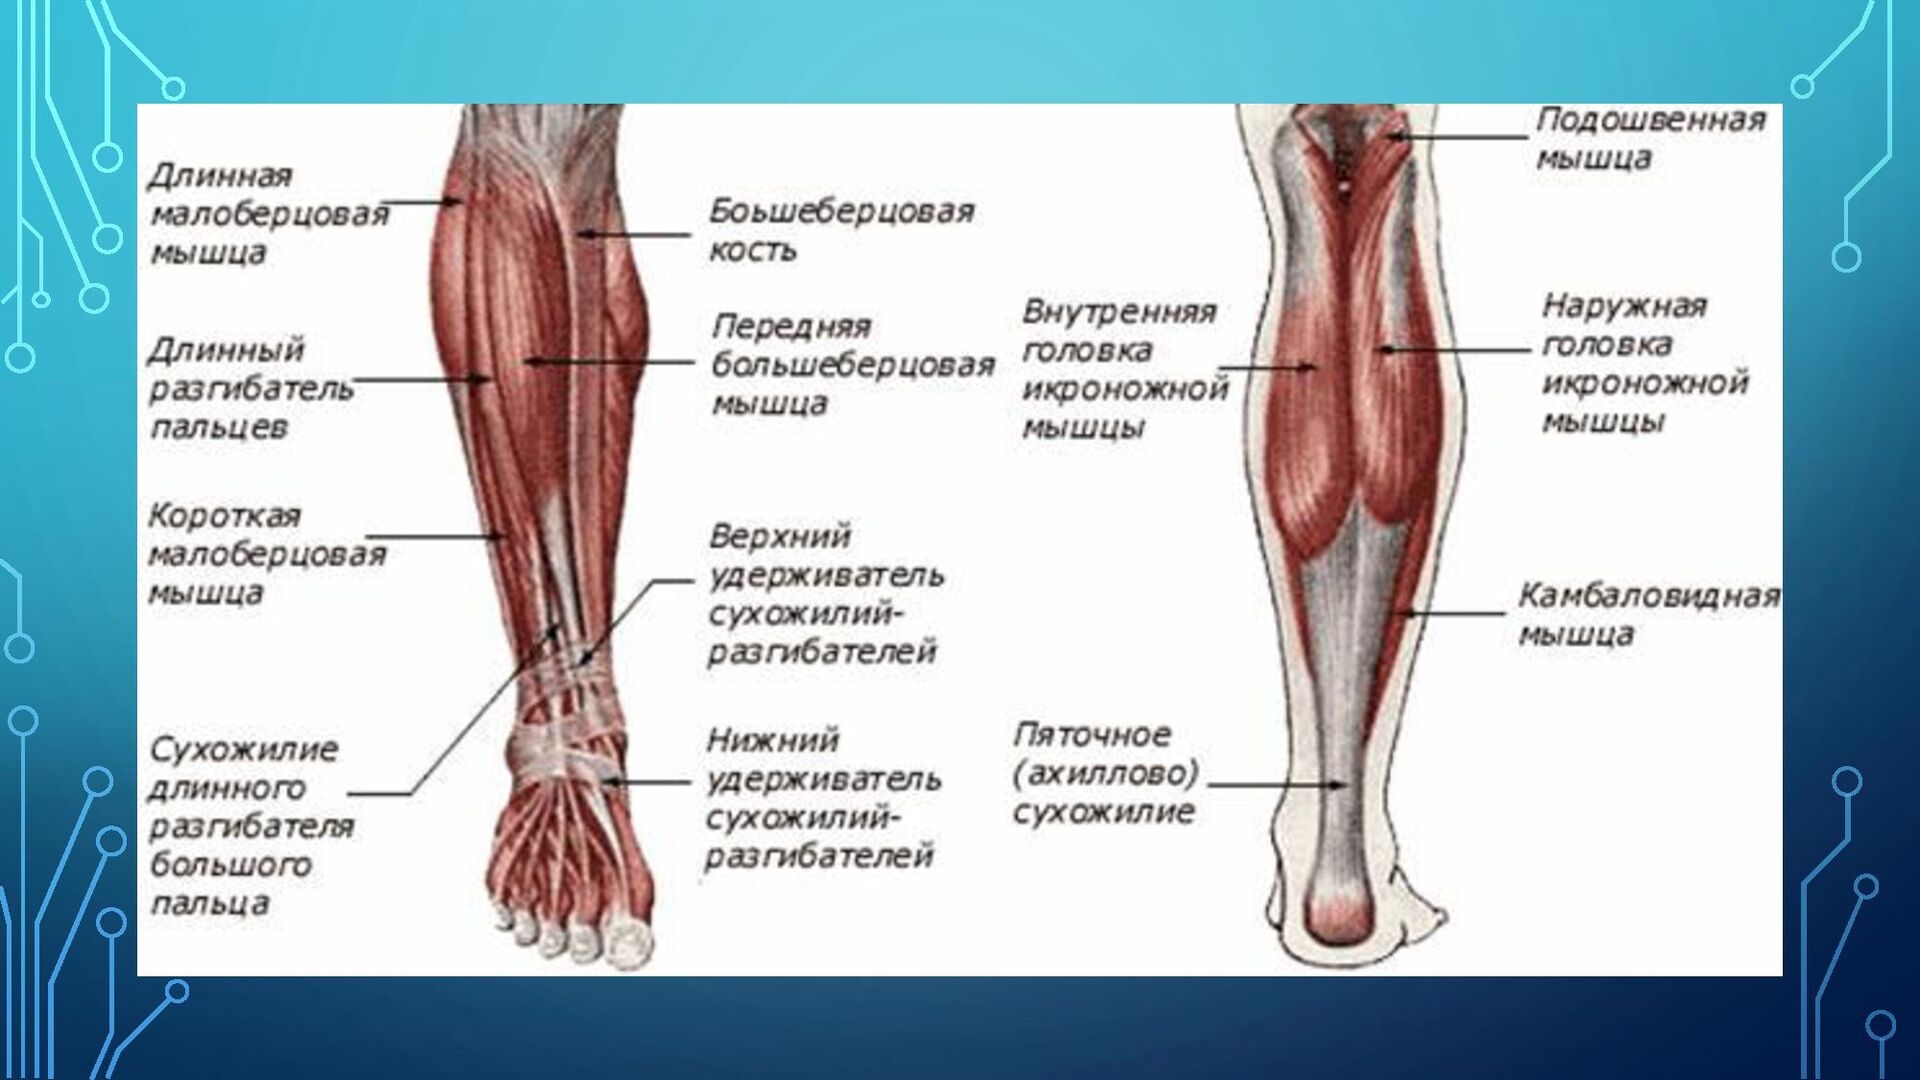 Мышцы нижних конечностей стопы. Строение мышц ноги спереди. Кости и мышцы нижних конечностей человека анатомия. Строение мышц на ноге спереди человека. Мышцы голени анатомия задняя группа мышц.